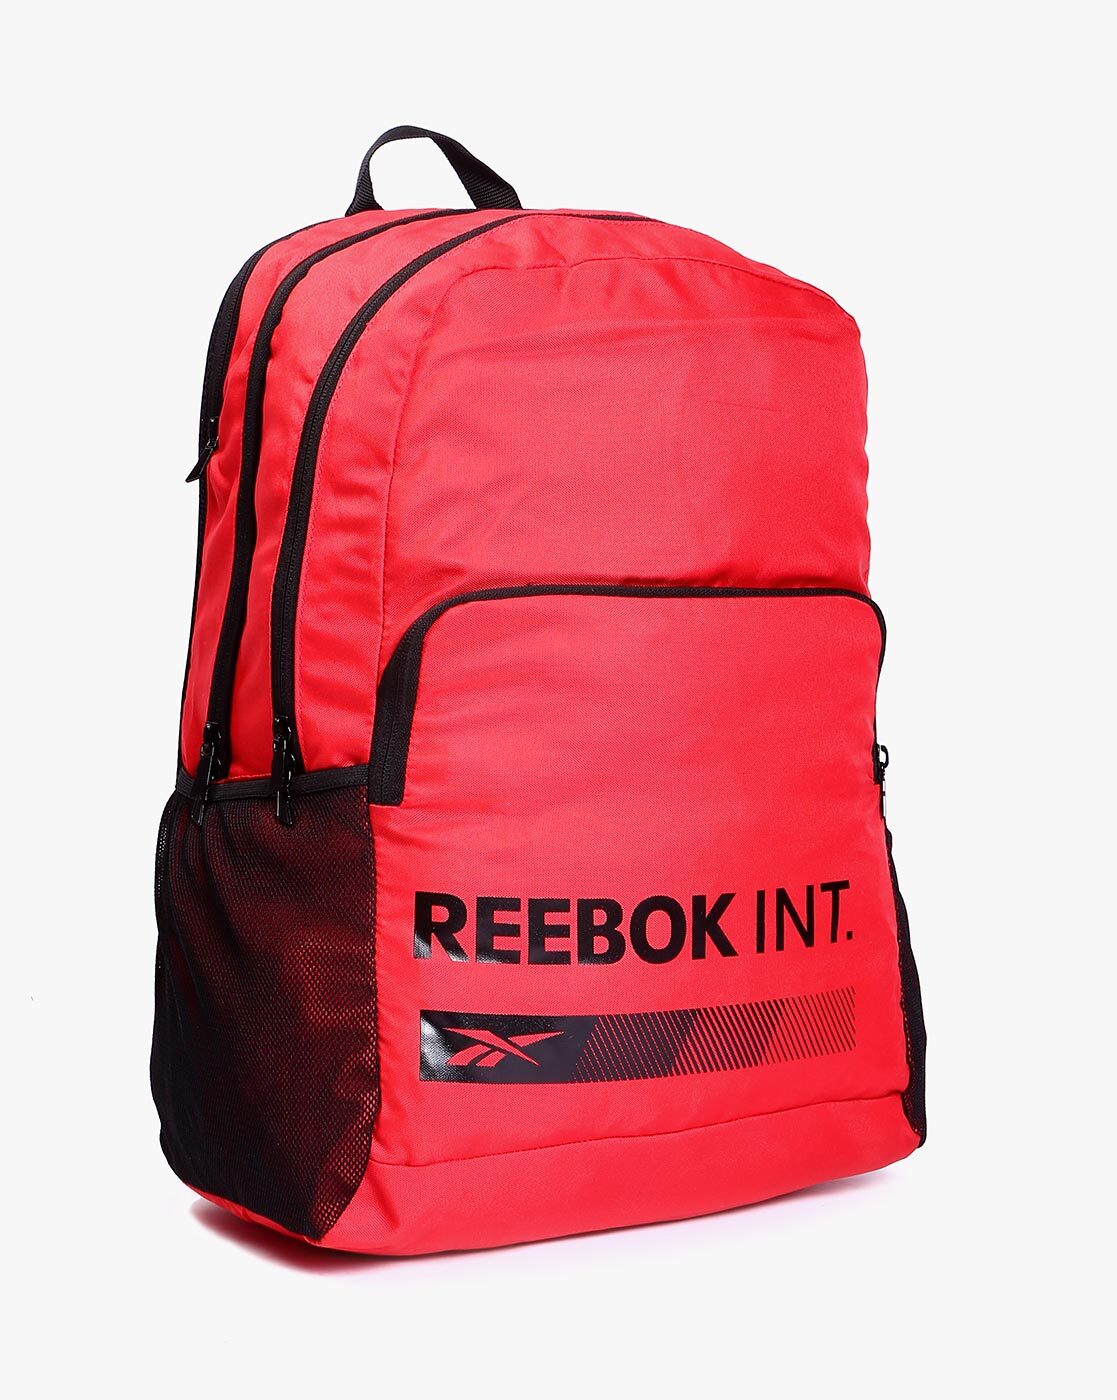 Reebok Womens Adult Isla 17.5 Laptop Backpack, Rose India | Ubuy